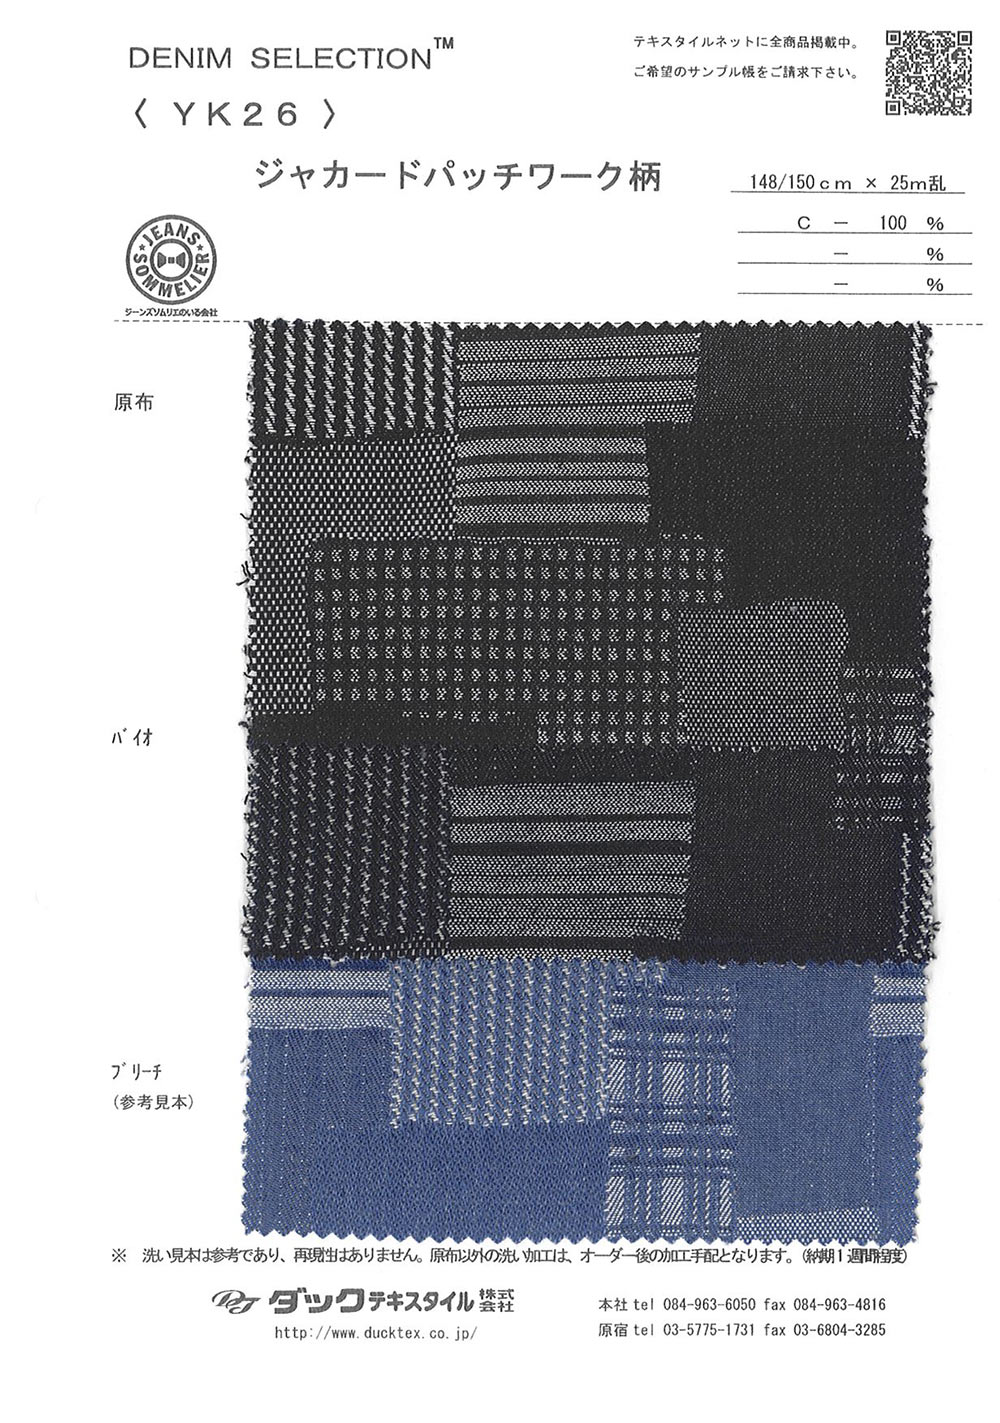 YK26 Jacquard Patchwork Design[Textile / Fabric] DUCK TEXTILE